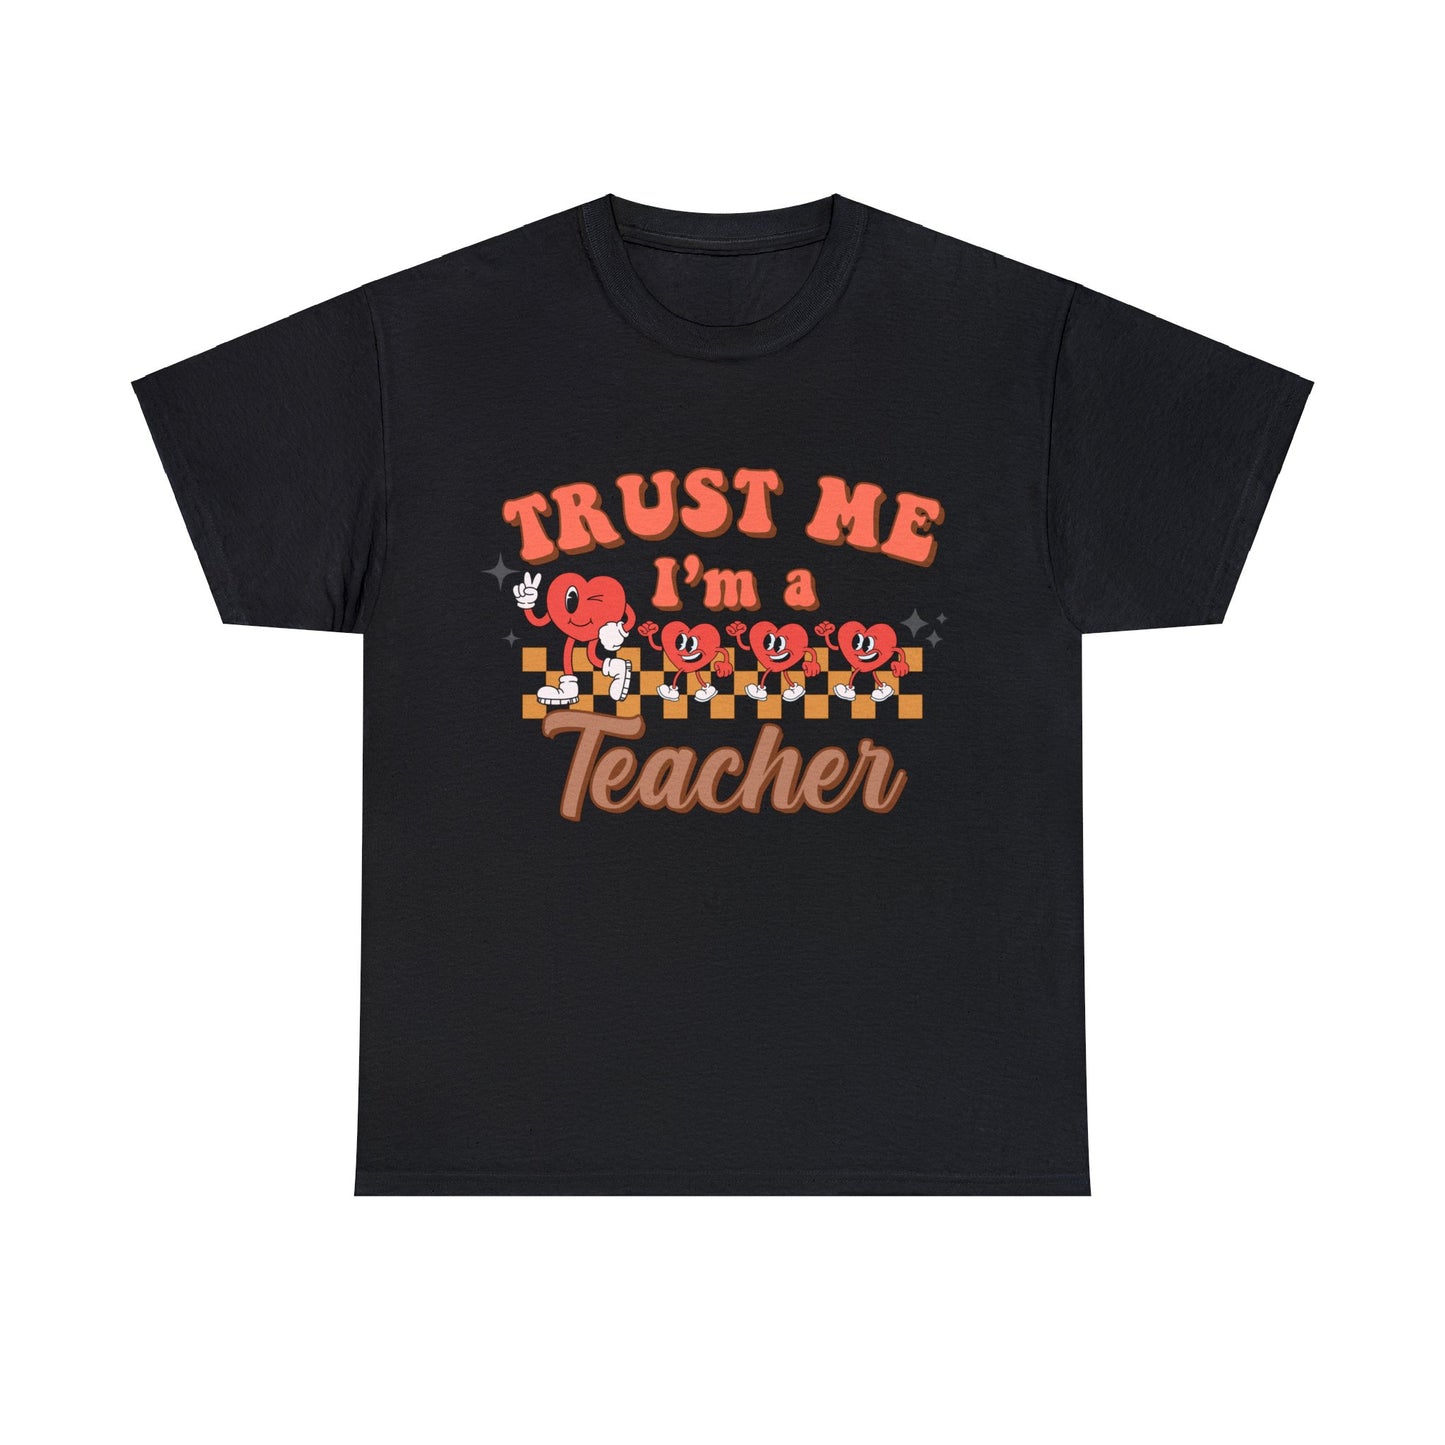 Trust me I'm a Teacher - Unisex T-Shirt